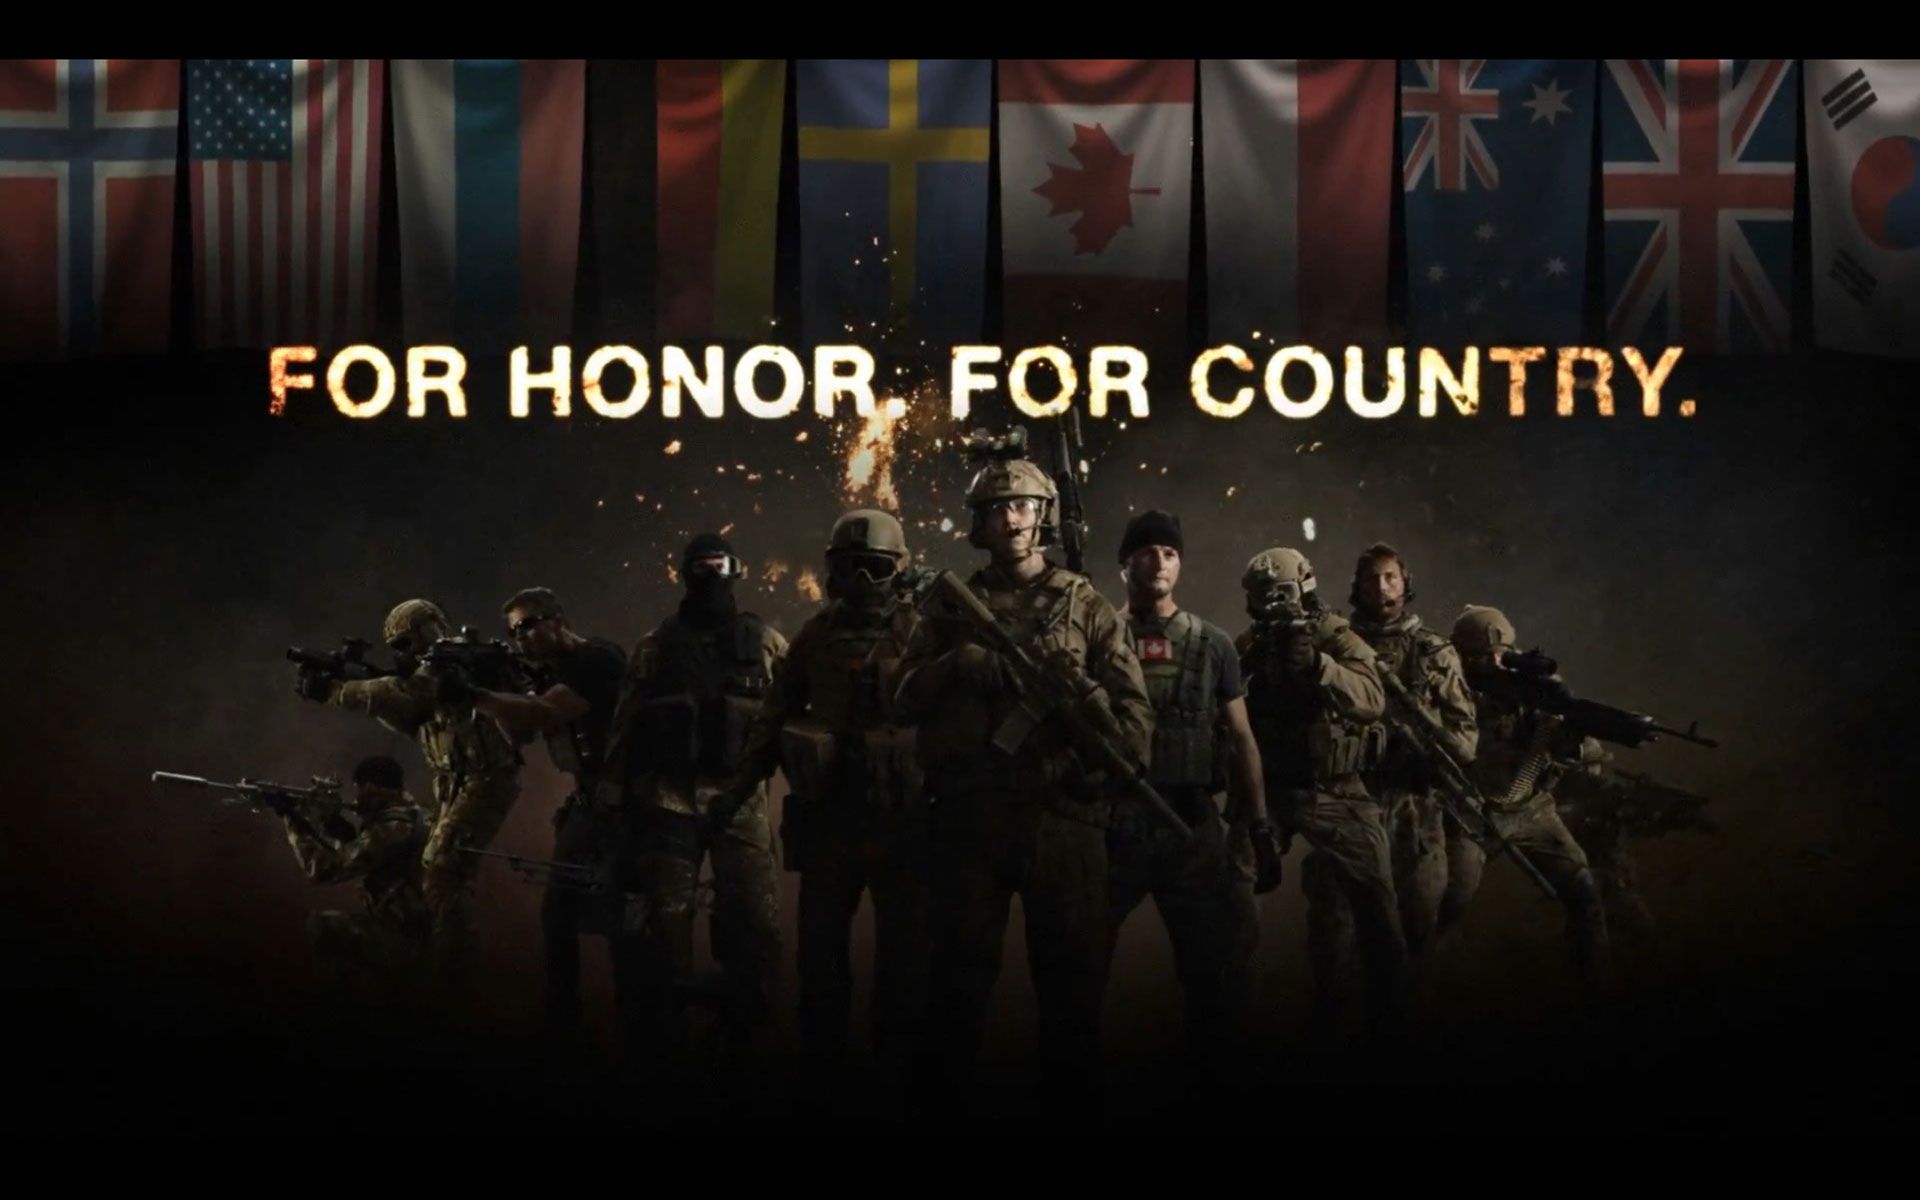 medal of honor warfighter sniper wallpaper